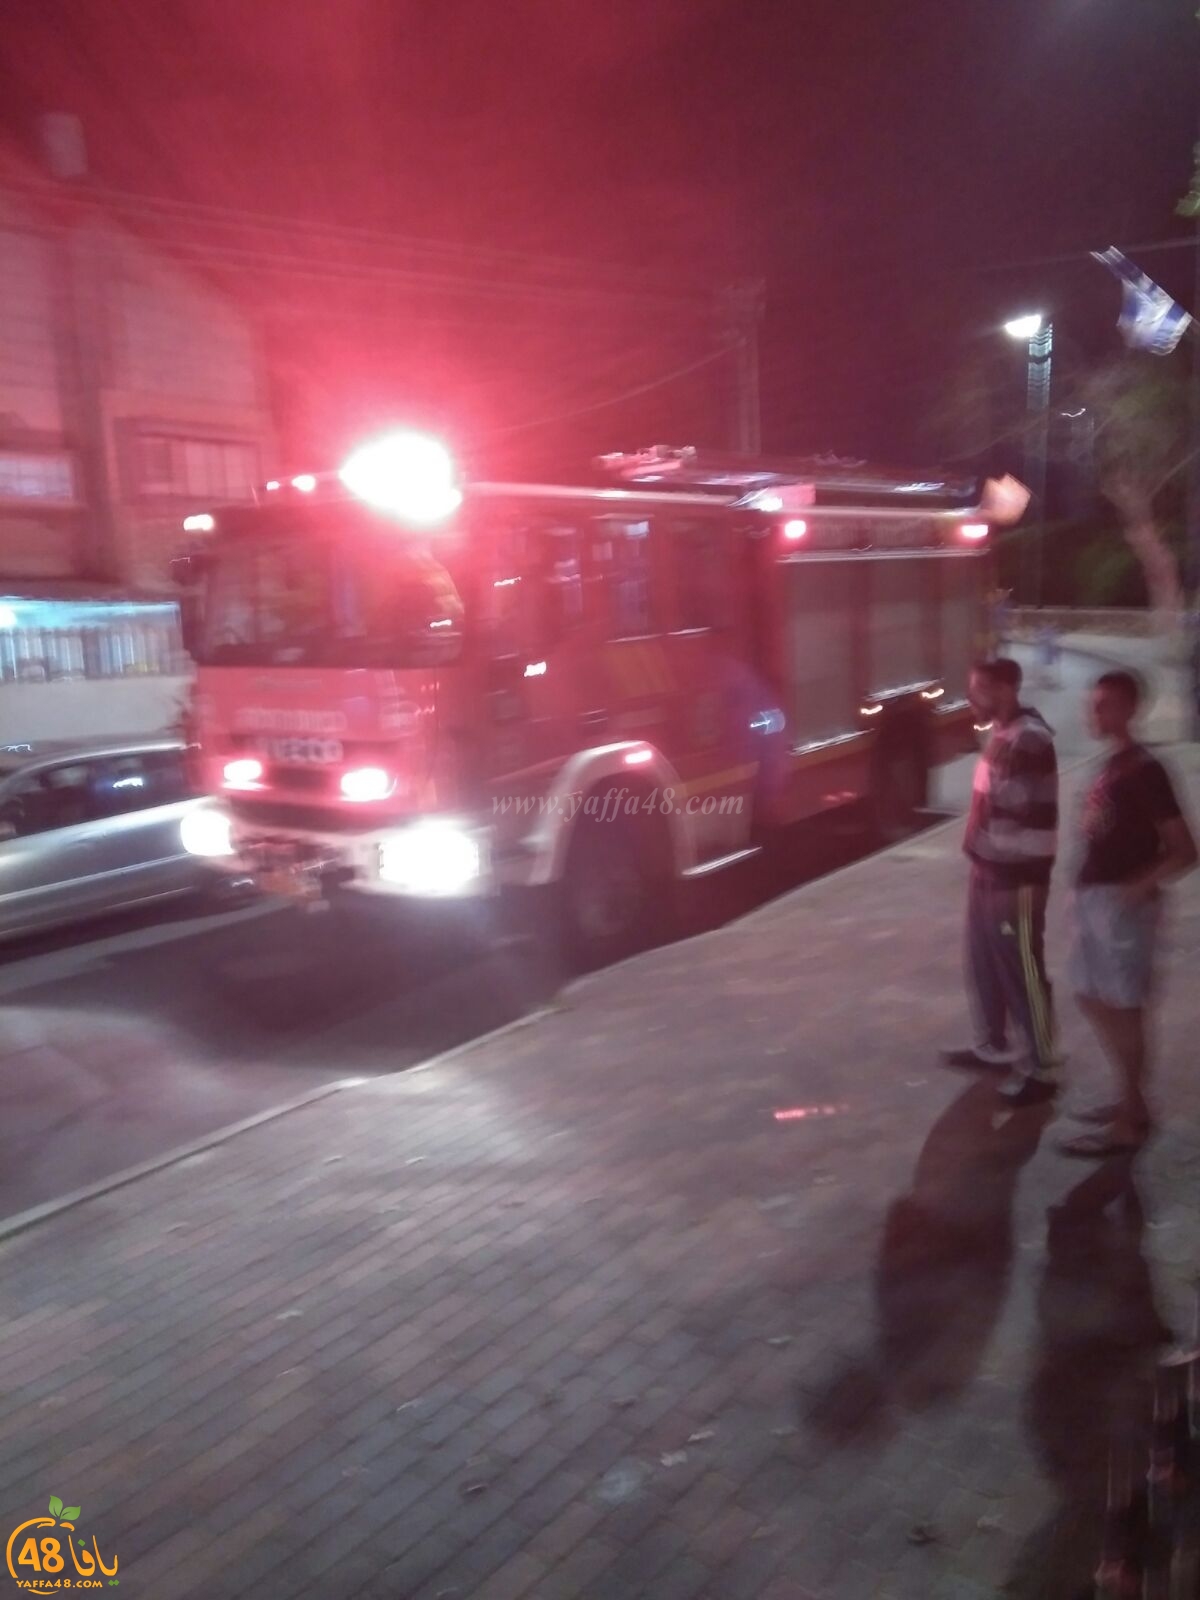  اللد: اصابة طفيفة لسيدة بحريق شقة سكنية بالمدينة 